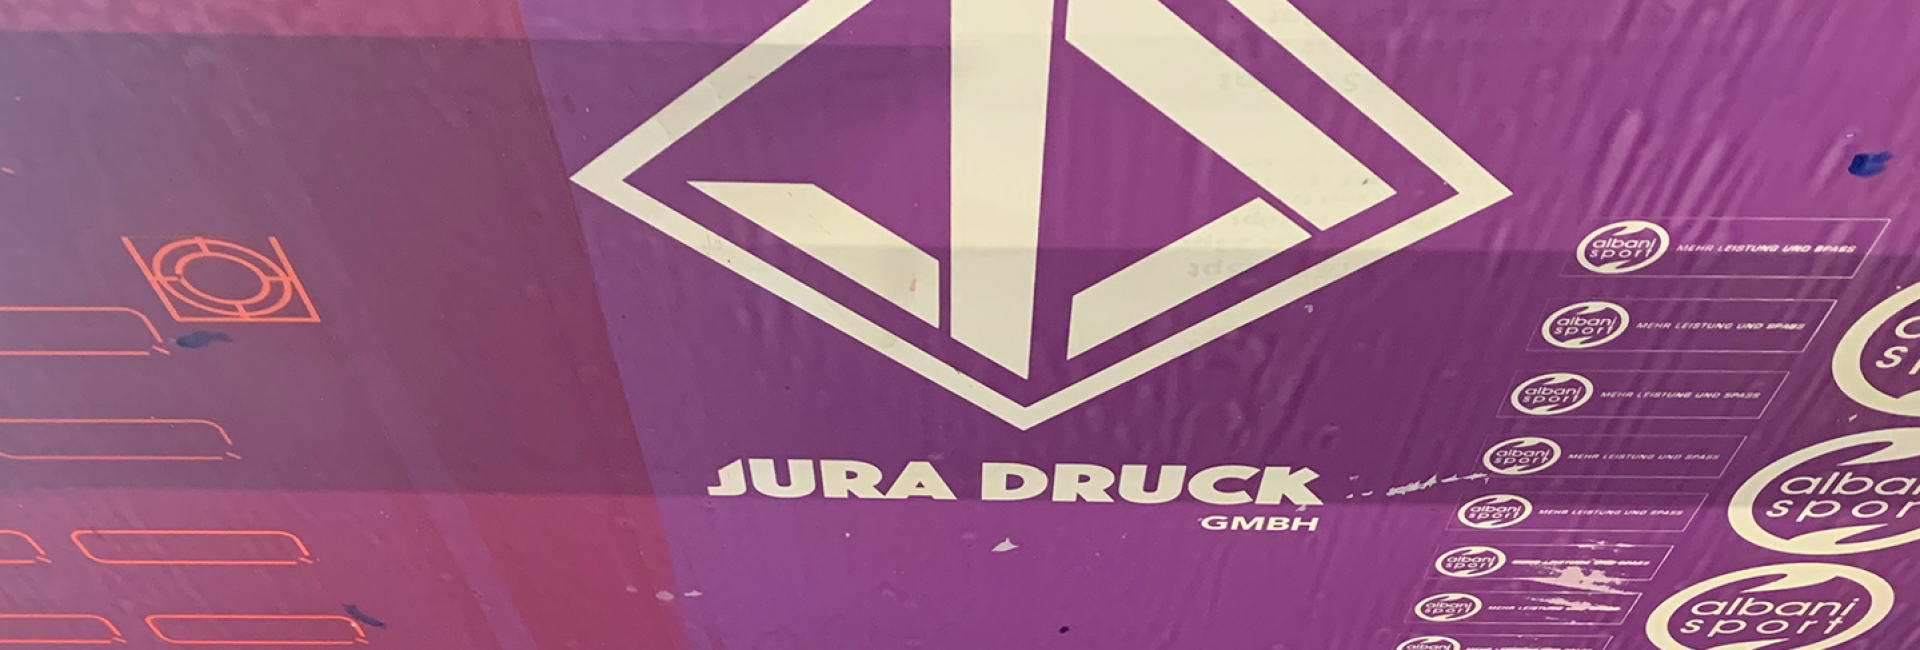 Siebdruck - Jura Druck GmbH